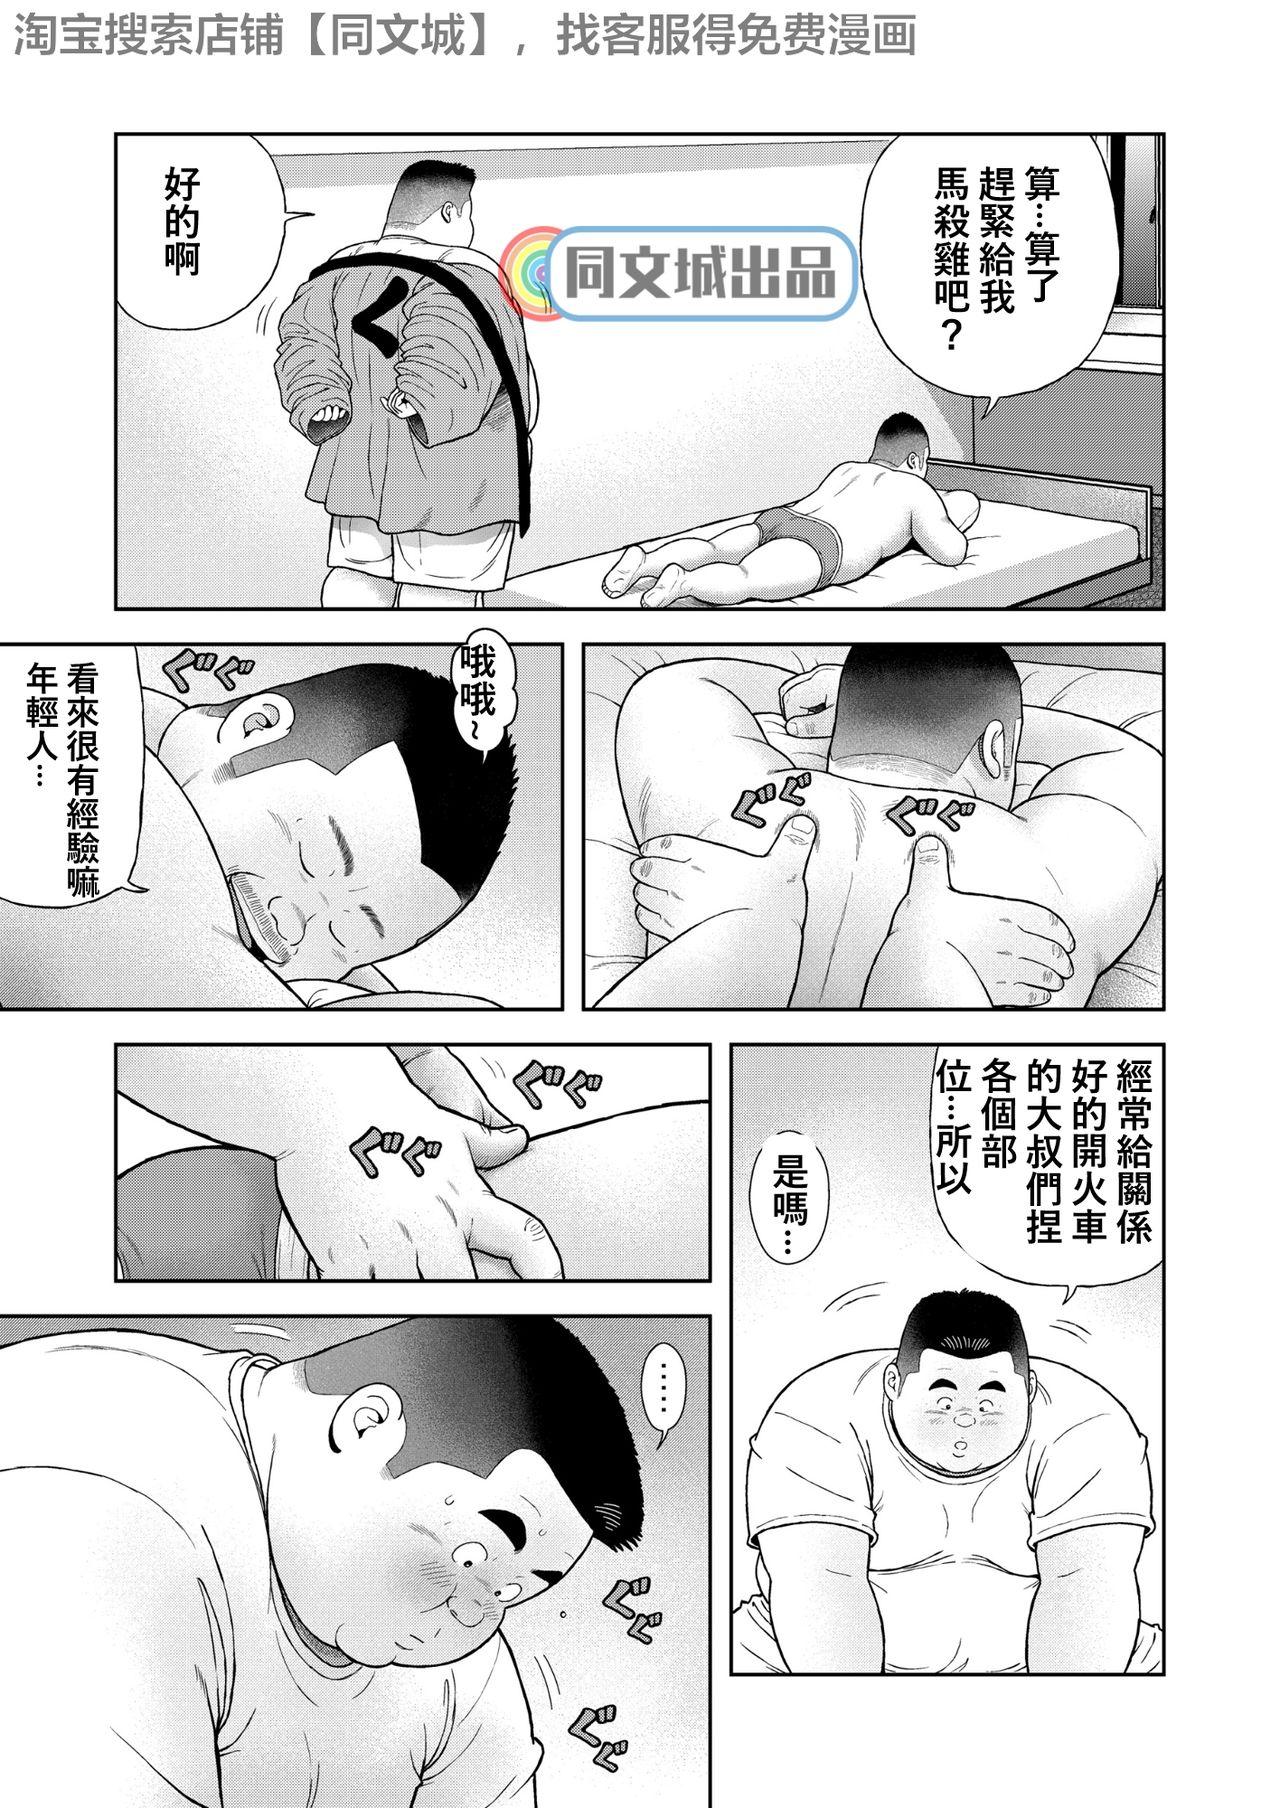 Chichona Kunoyu Yonhatsume Geinin no Saga - Original Two - Page 9